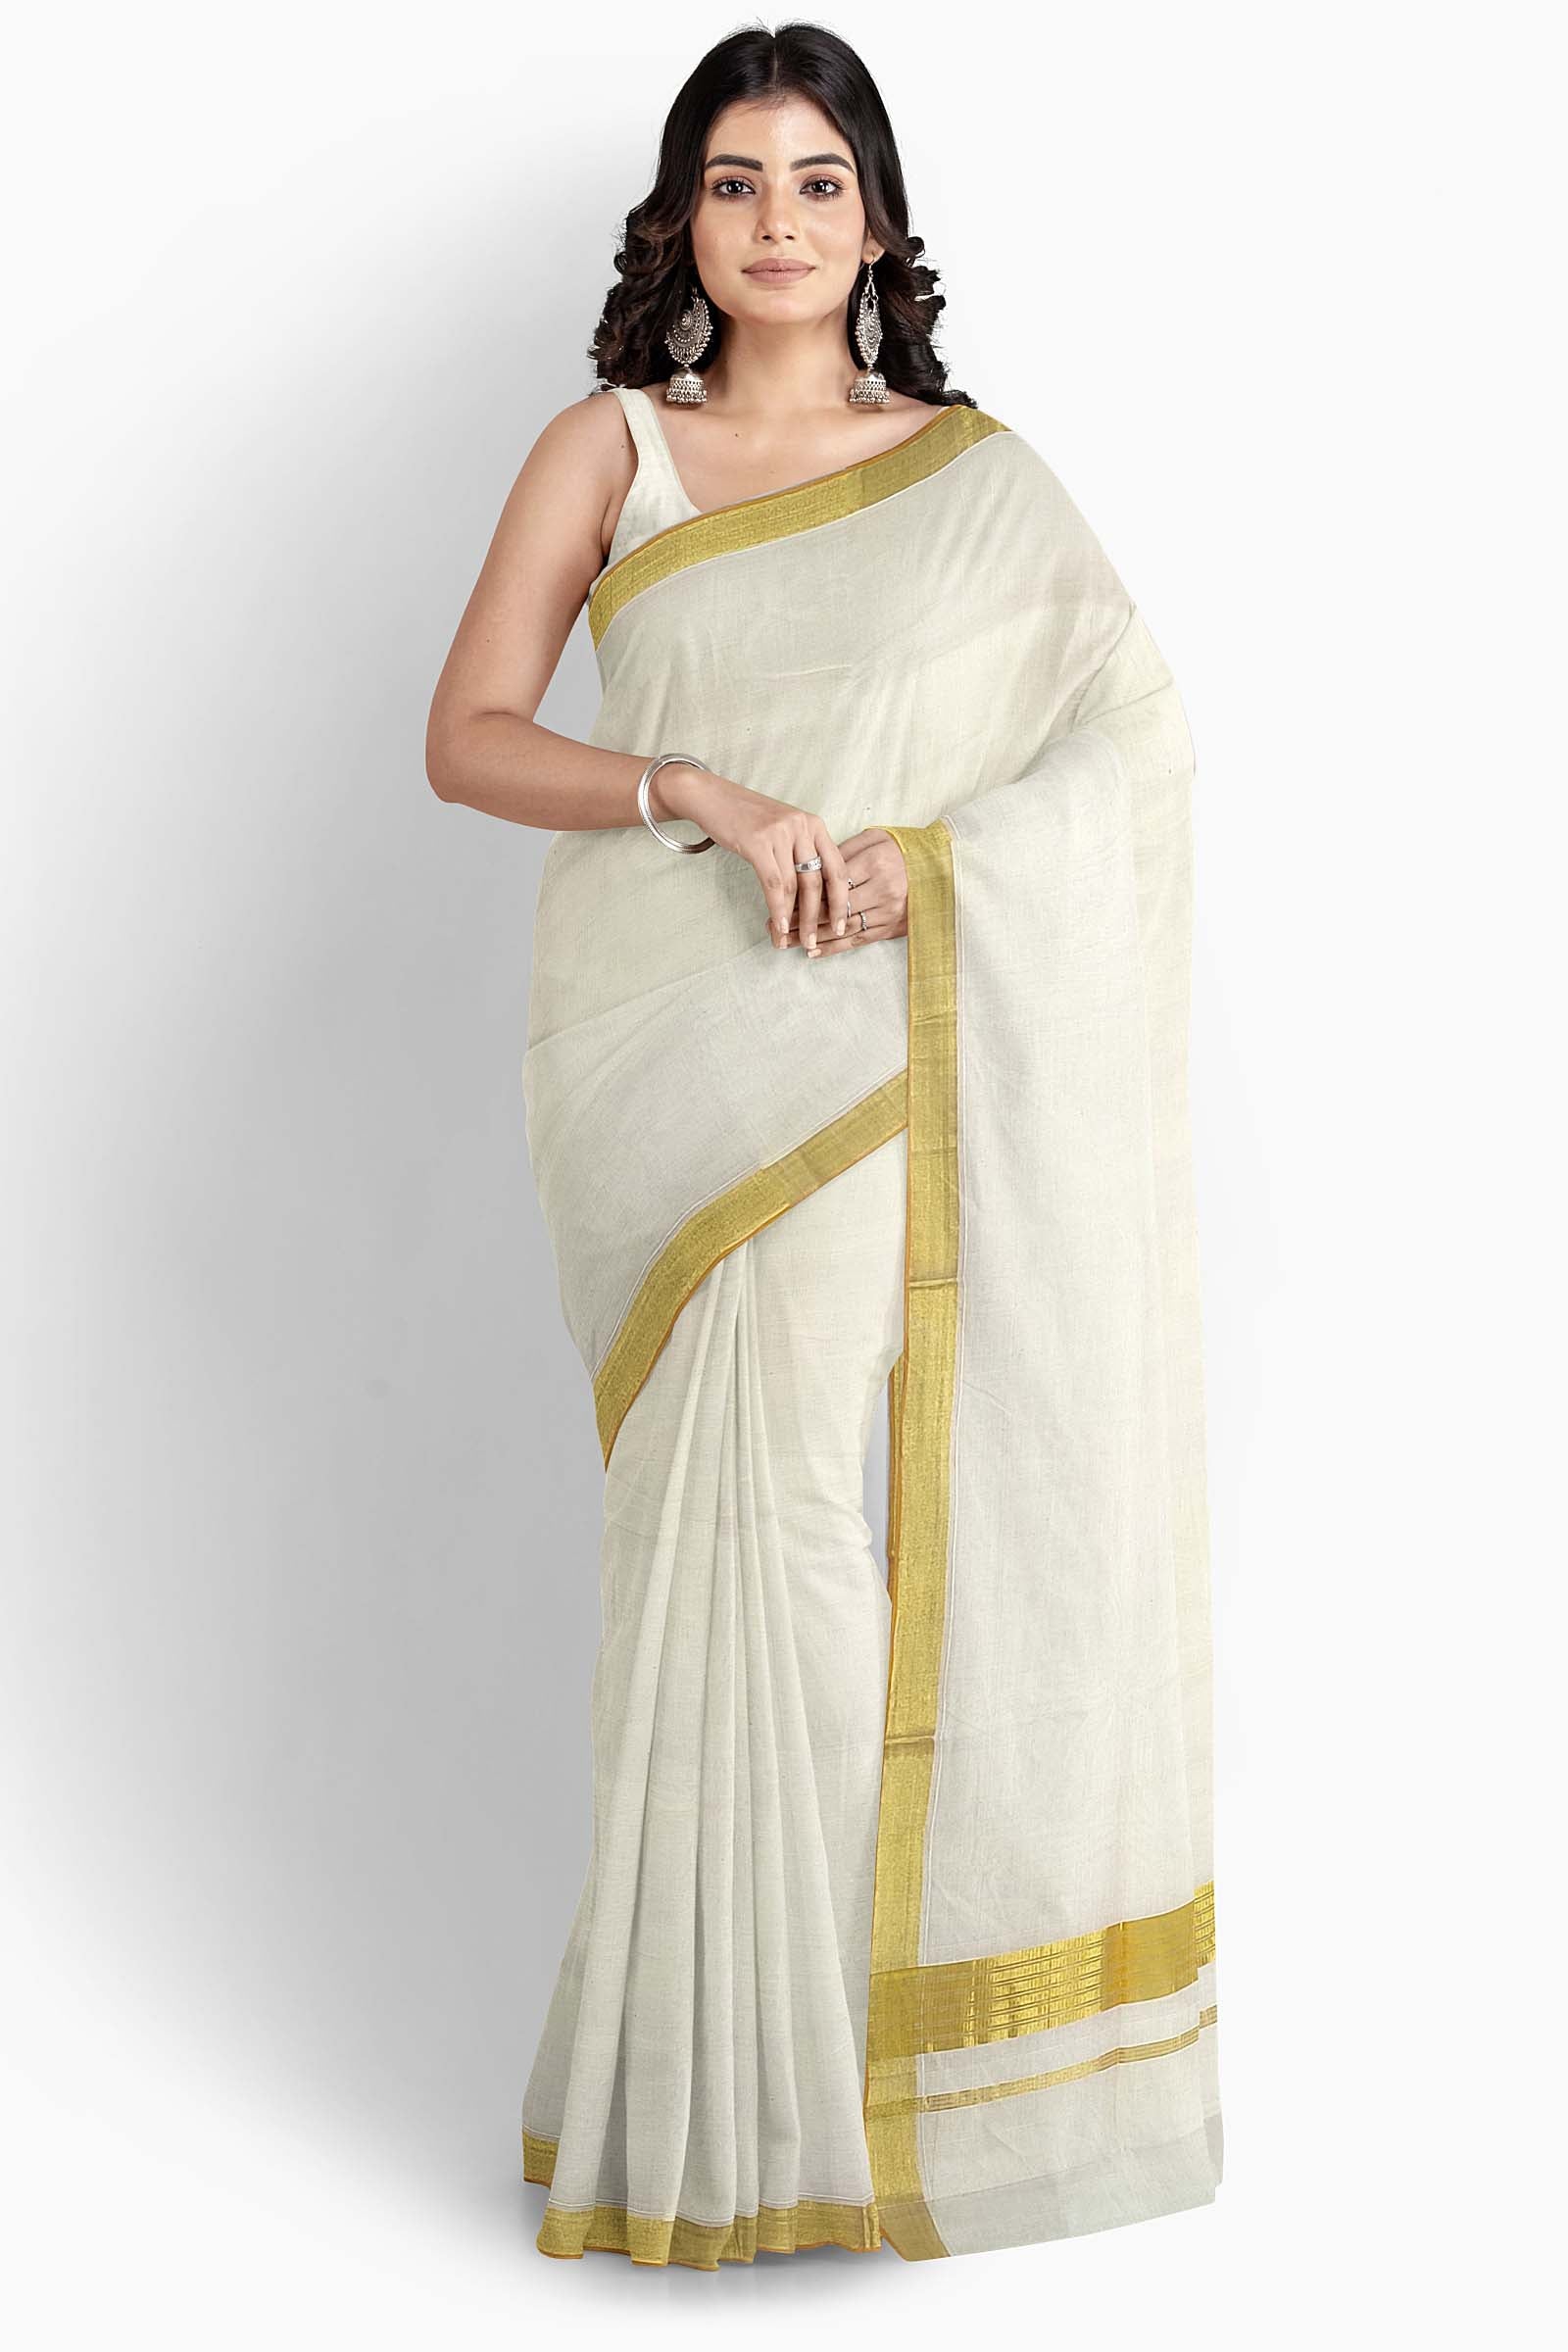 Kerala Saree Sleeveless Dress | Ruachbydivyaharidas